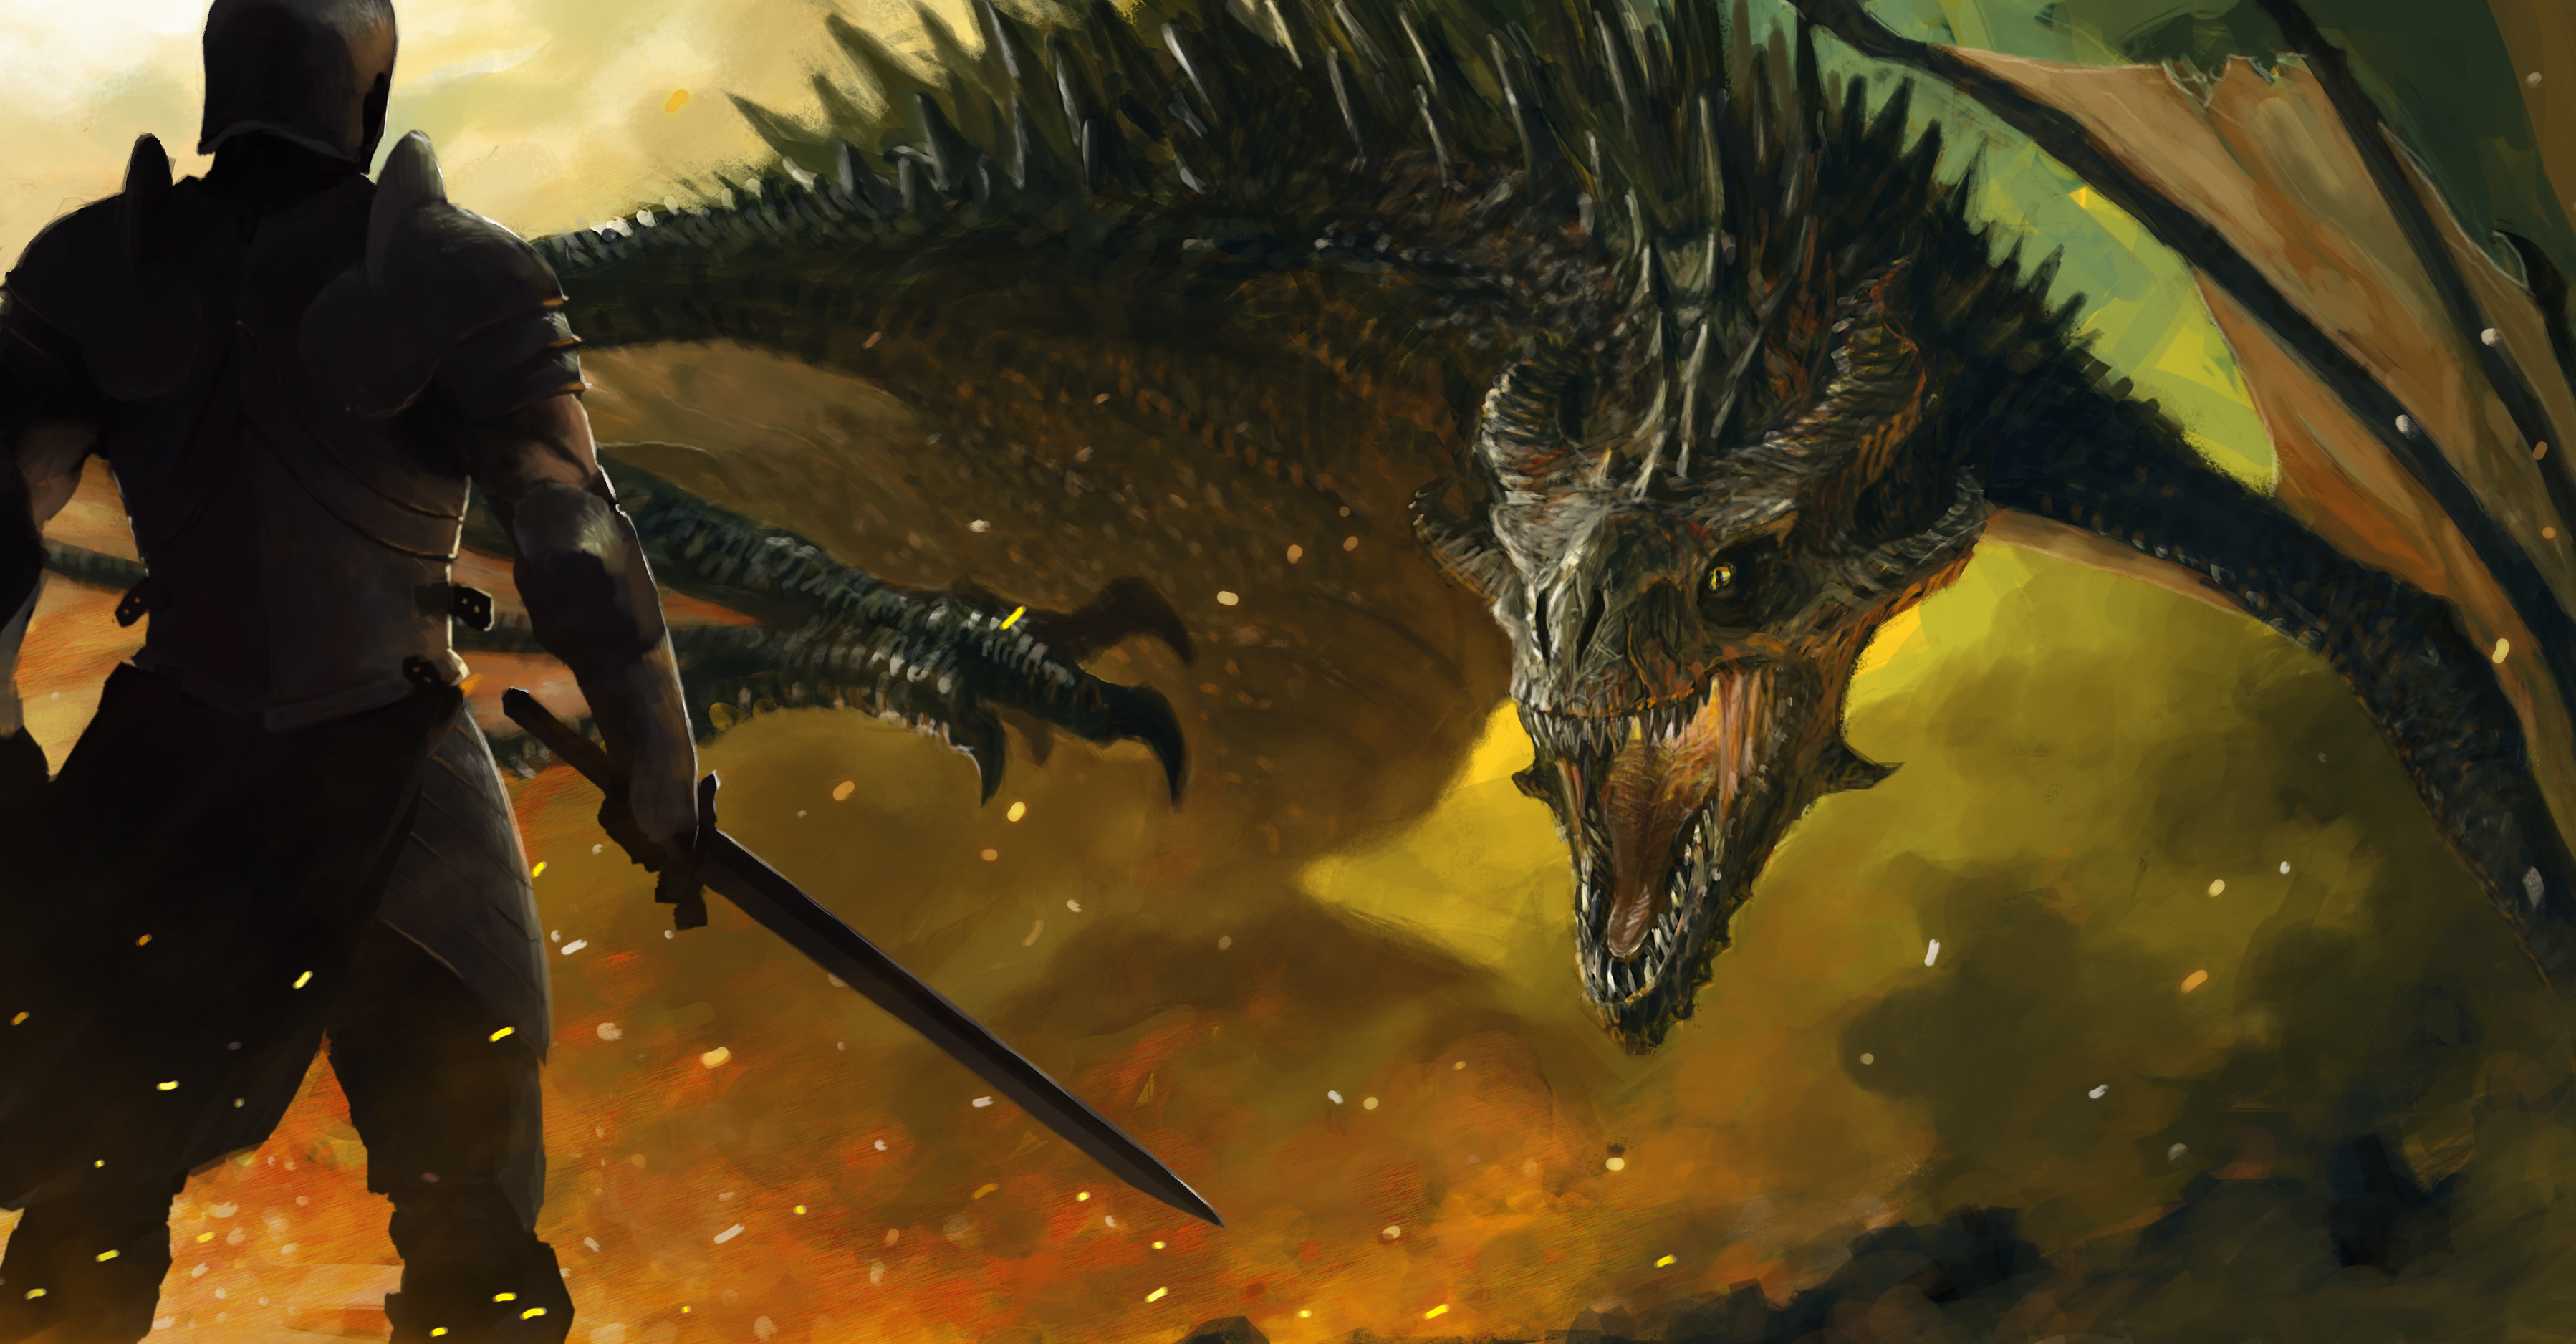 Победите дракона игра. Ланселот рыцарь против дракона. Рыцарь сражается с драконом. Человек сражается с драконом. Сражение с драконом.